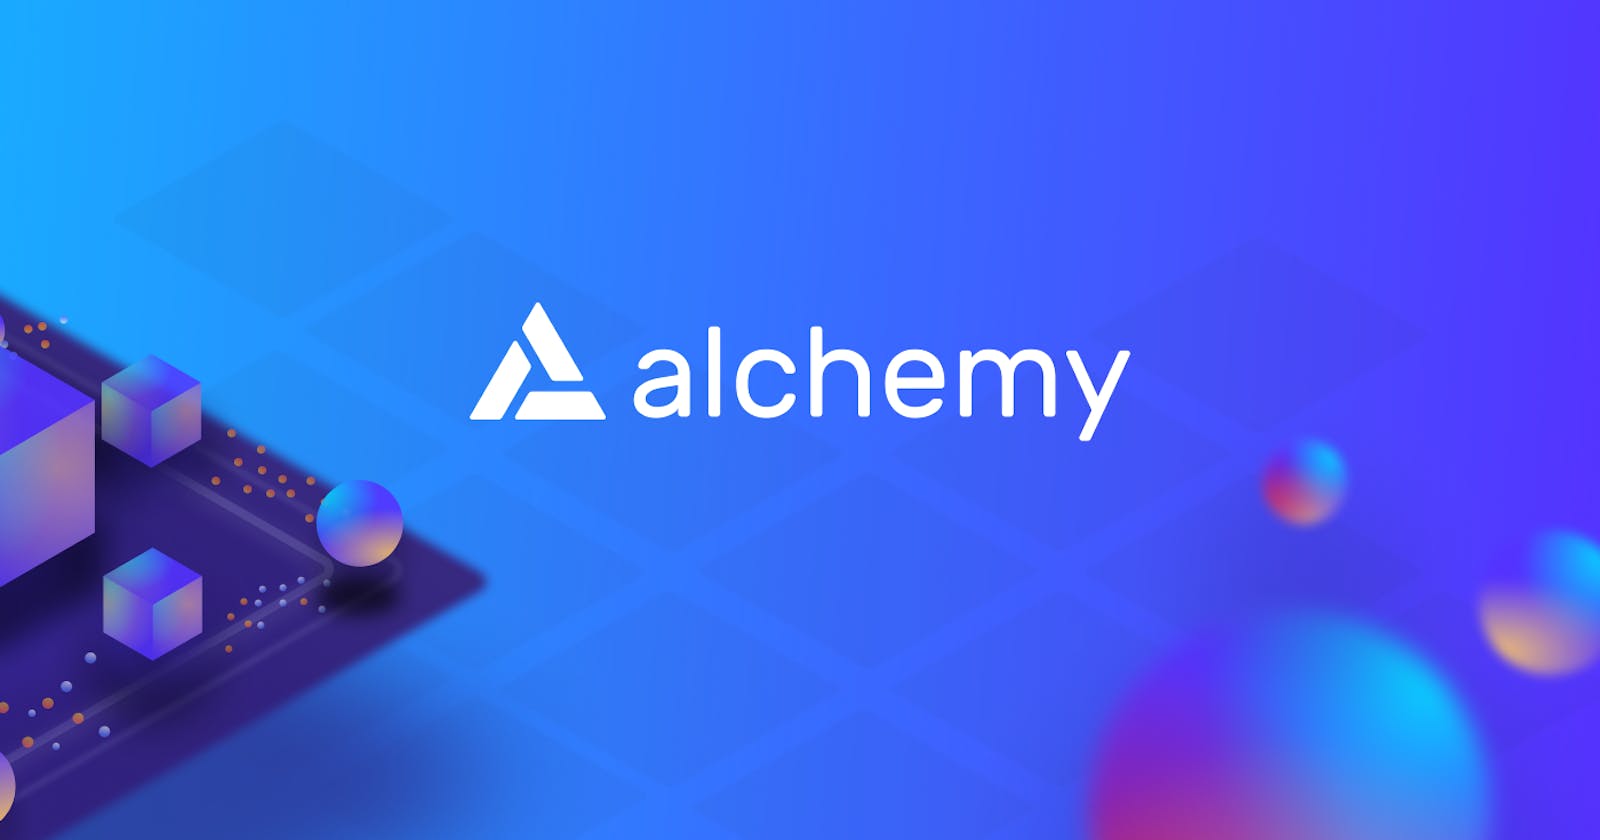 Alchemy: "AWS for blockchain"